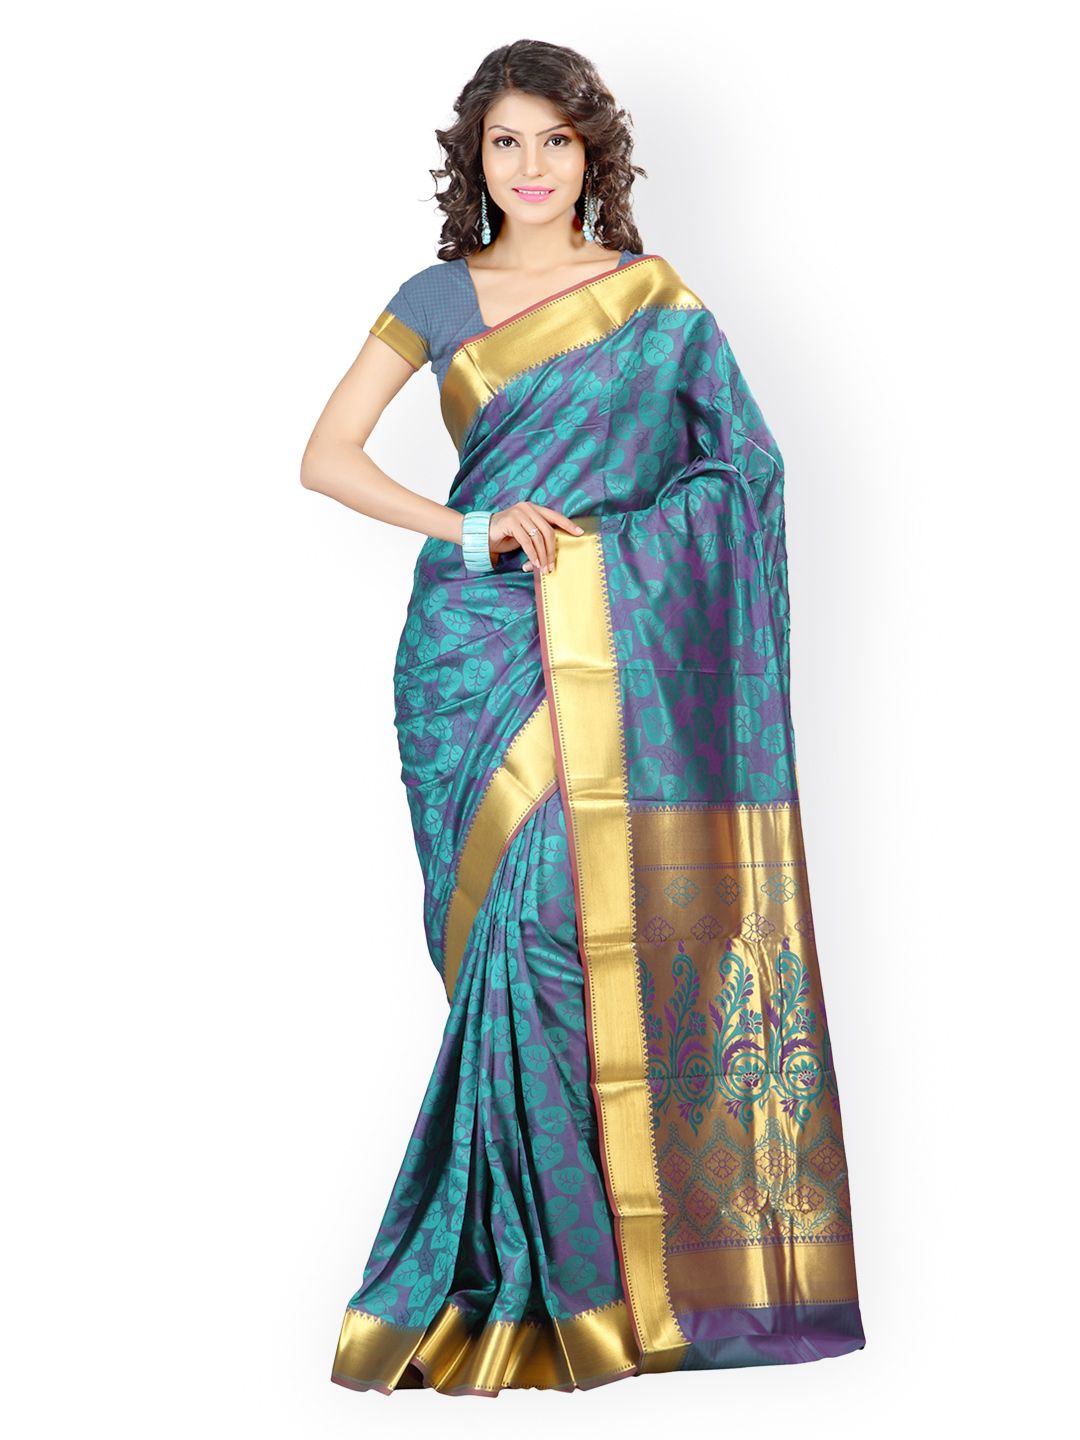 Varkala Silk Sarees Teal Green & Purple Art Silk & Jacquard Traditional Saree Price in India